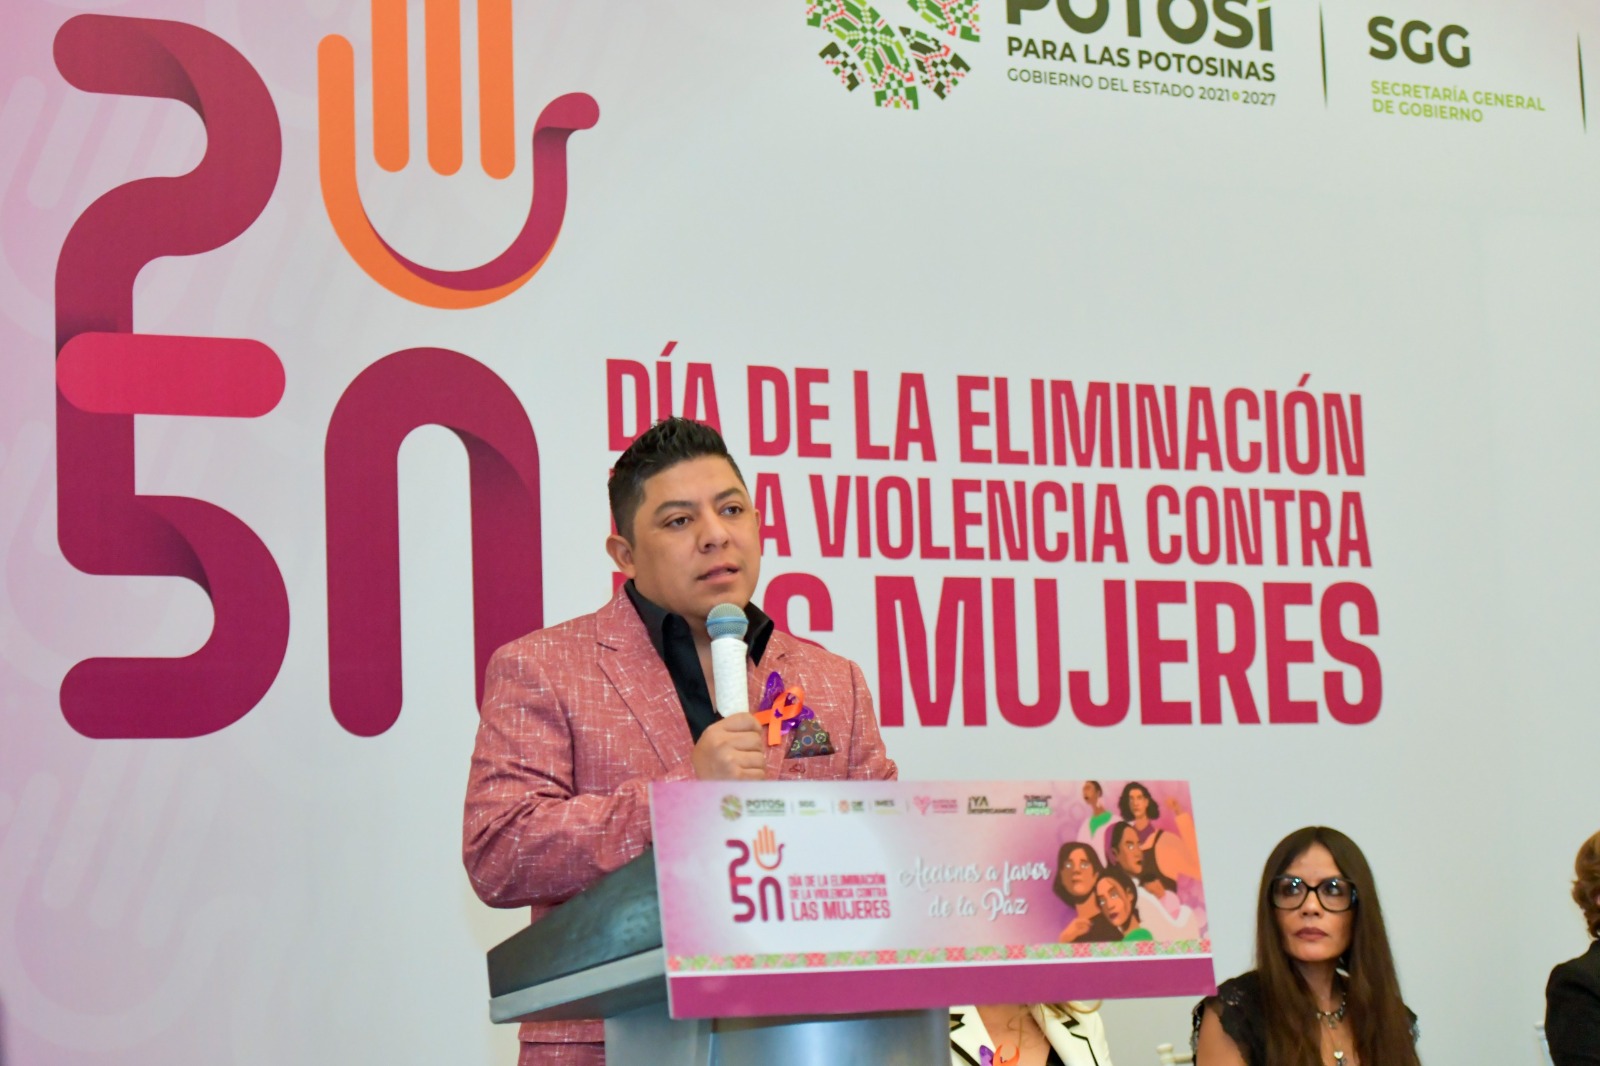 Gobernador de San Luis Potosí Ricardo Gallardo Cardona, reafirmó su compromiso de erradicar la violencia contra las mujeres.